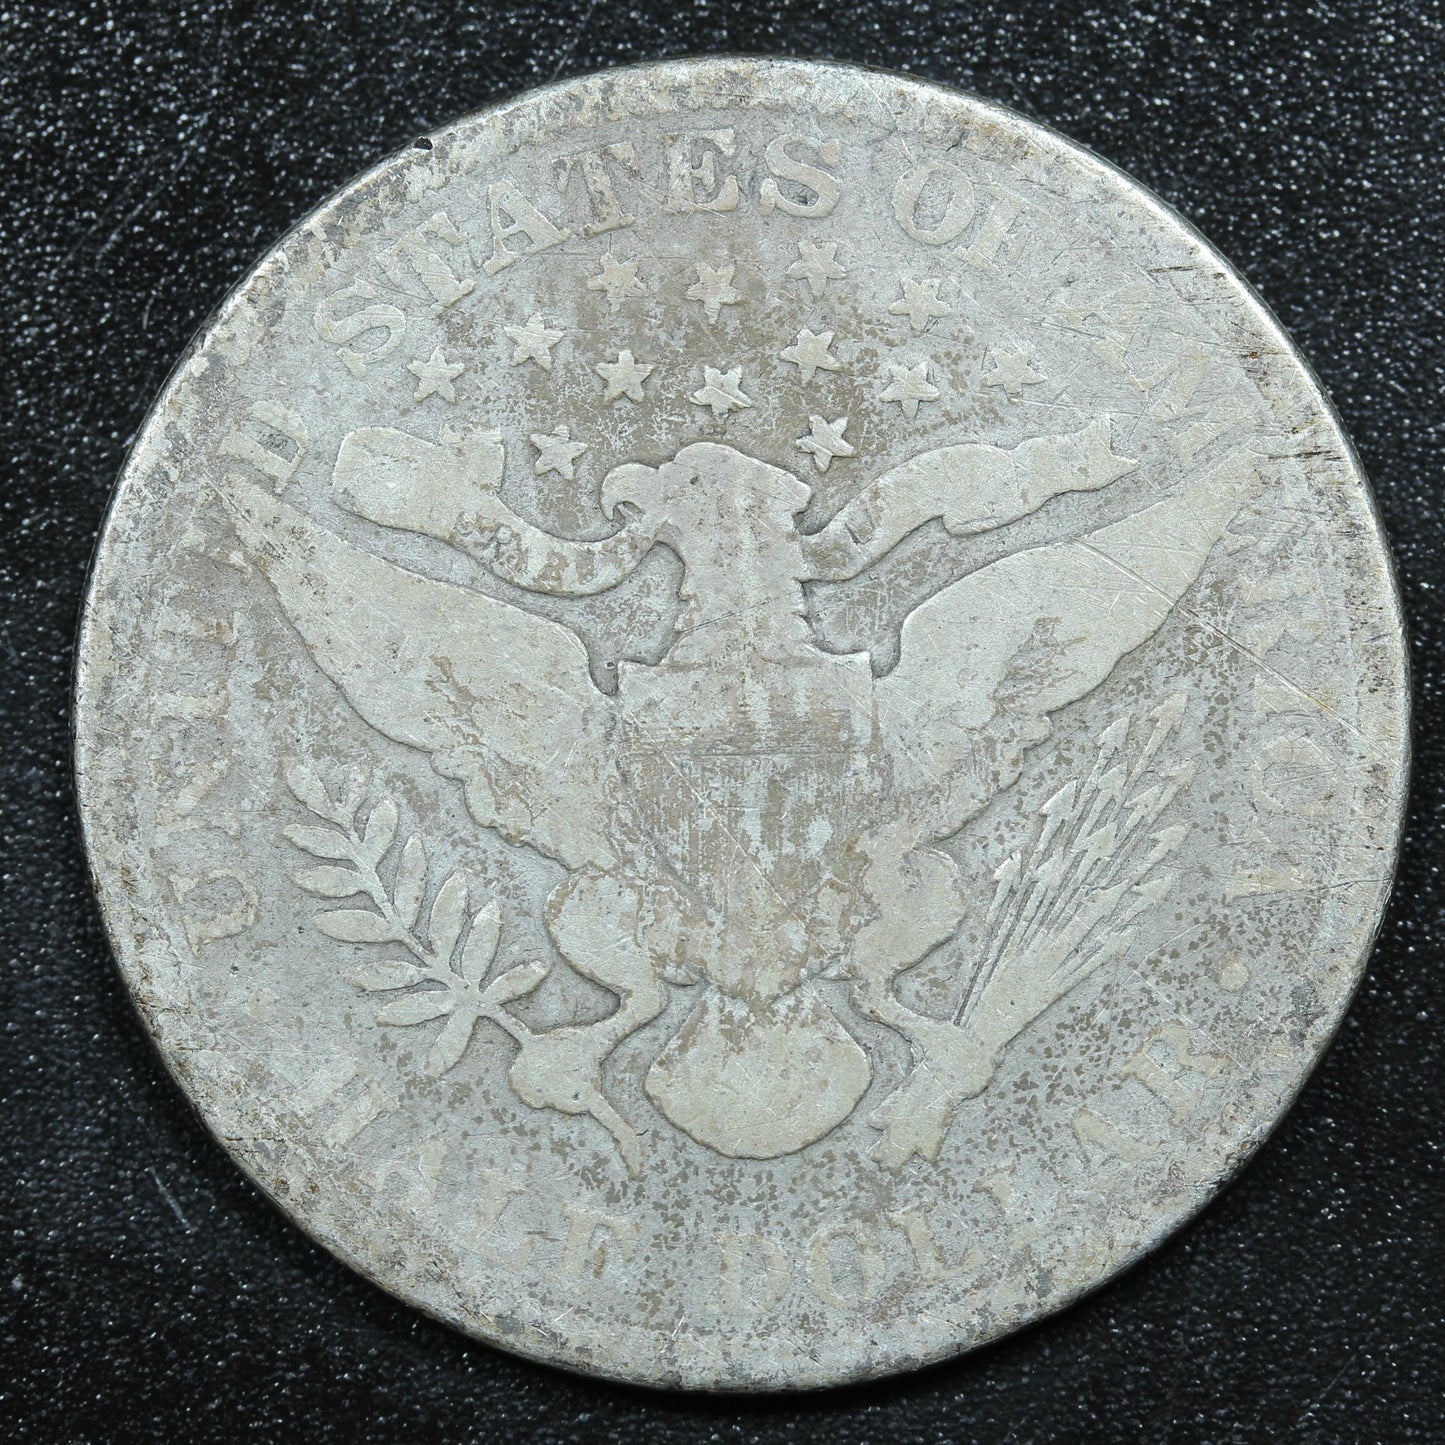 1899 Barber Silver Half Dollar - Philadelphia